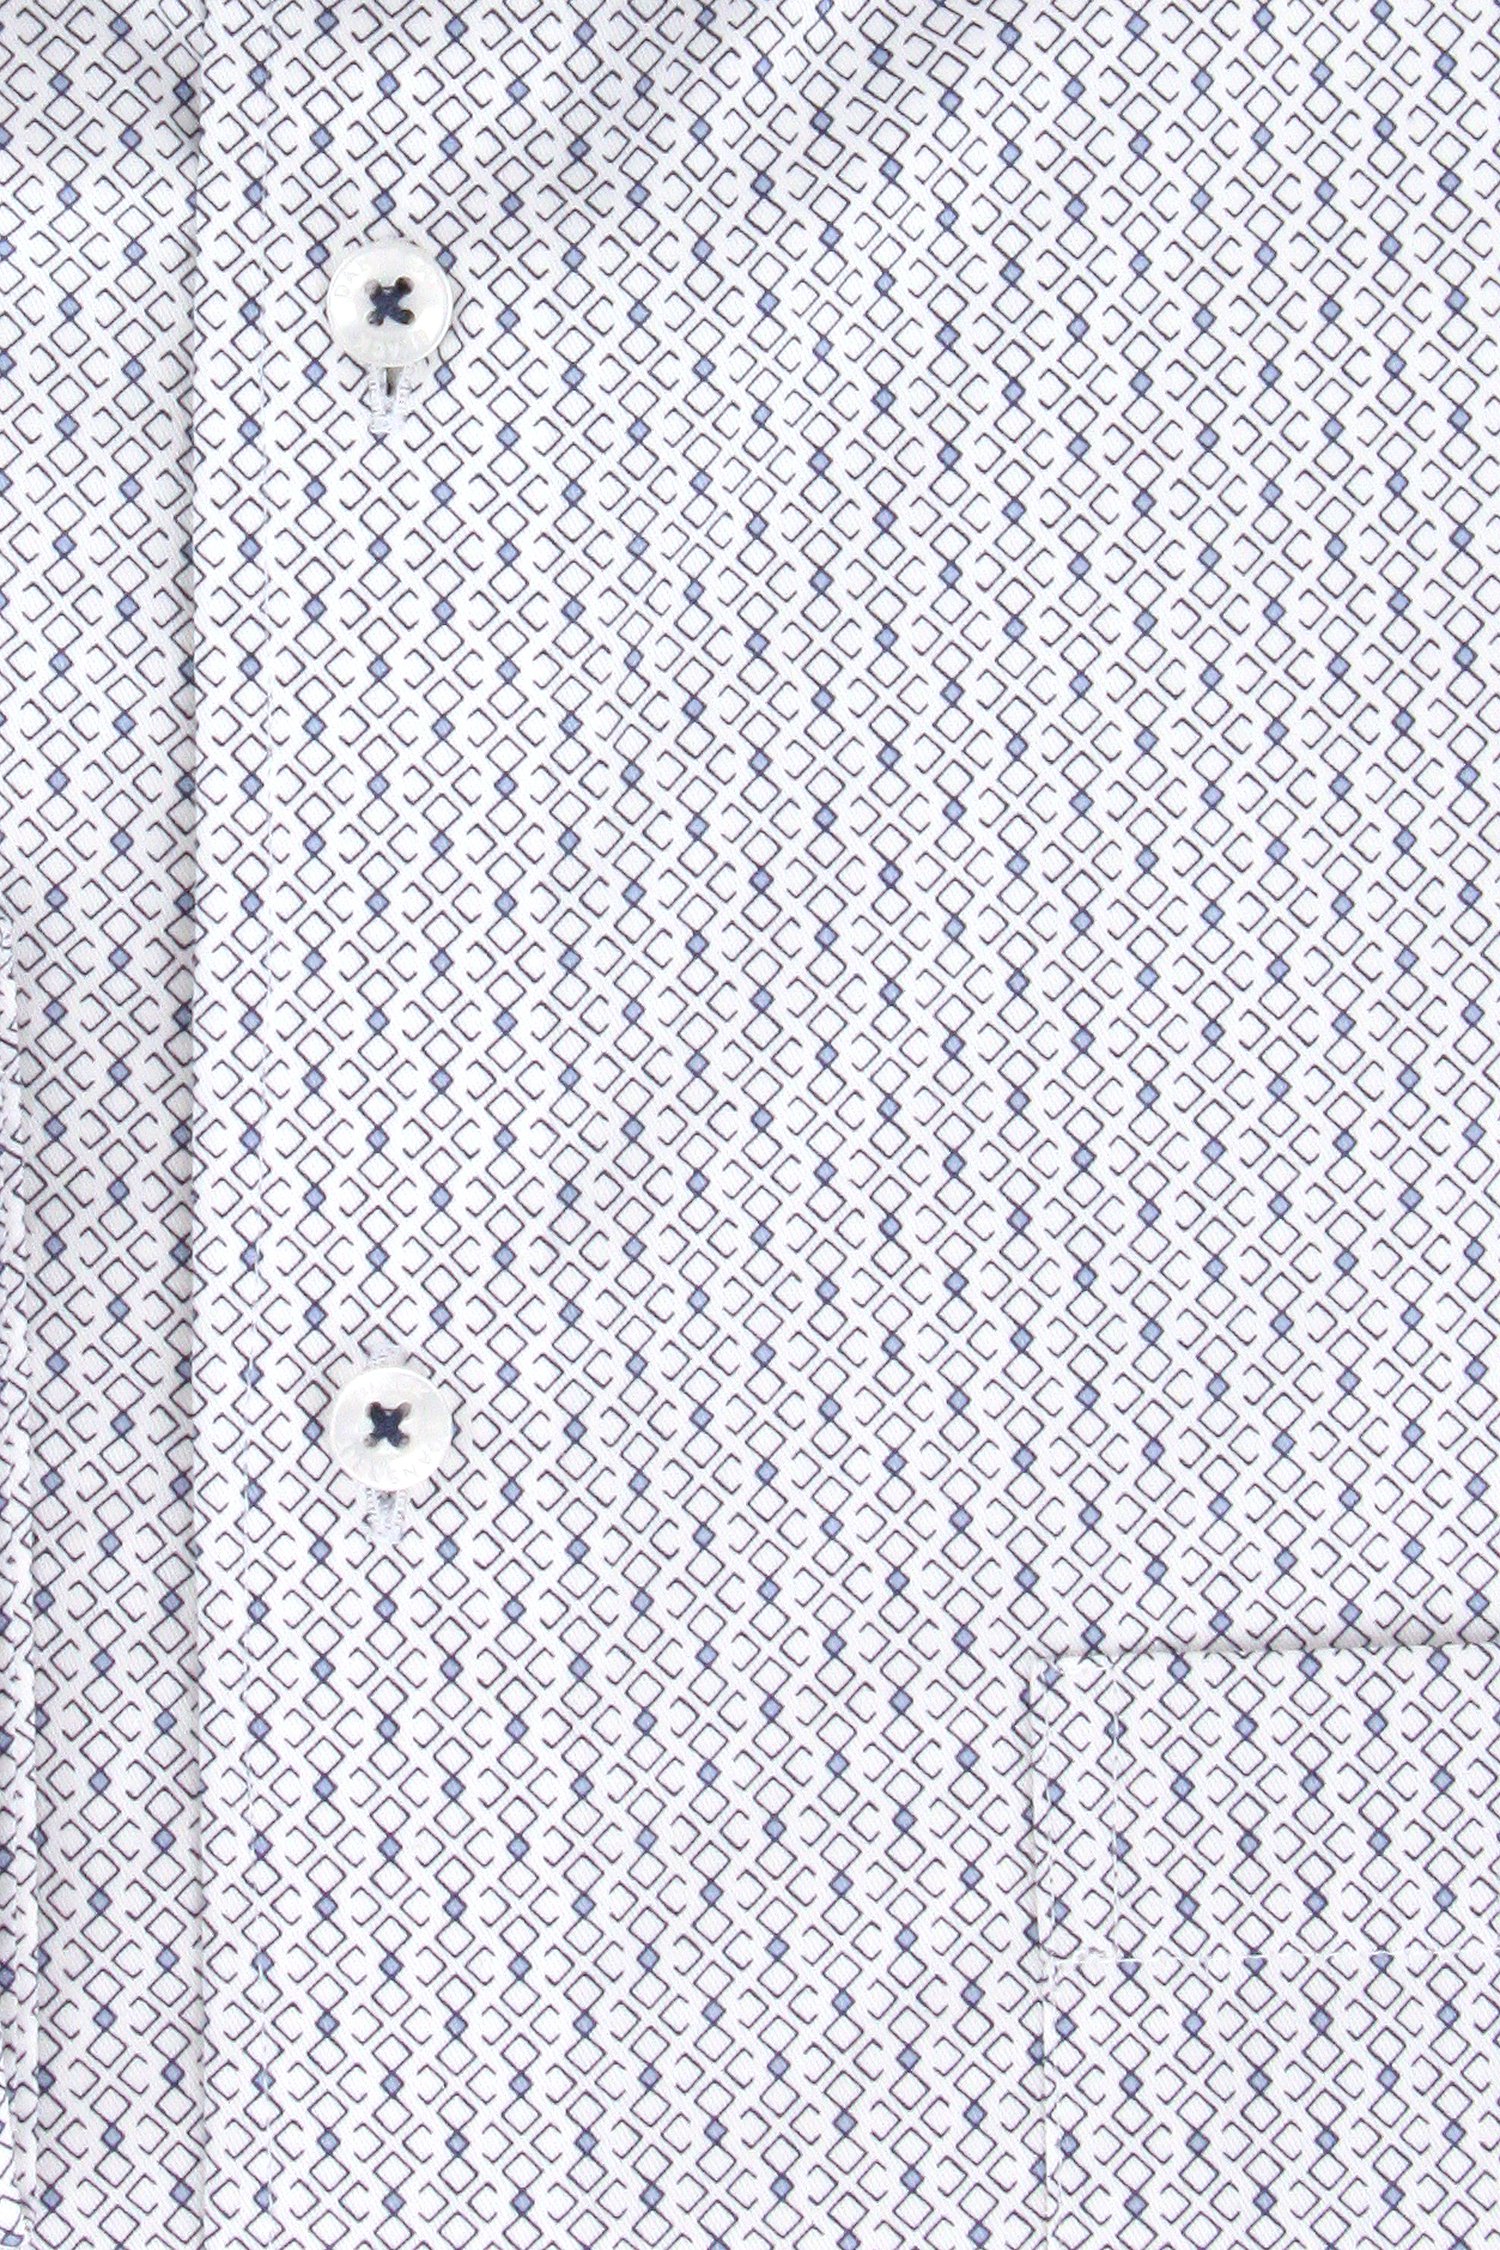 Wit hemd met fijn blauw patroon - comfort fit van Dansaert Black voor Heren